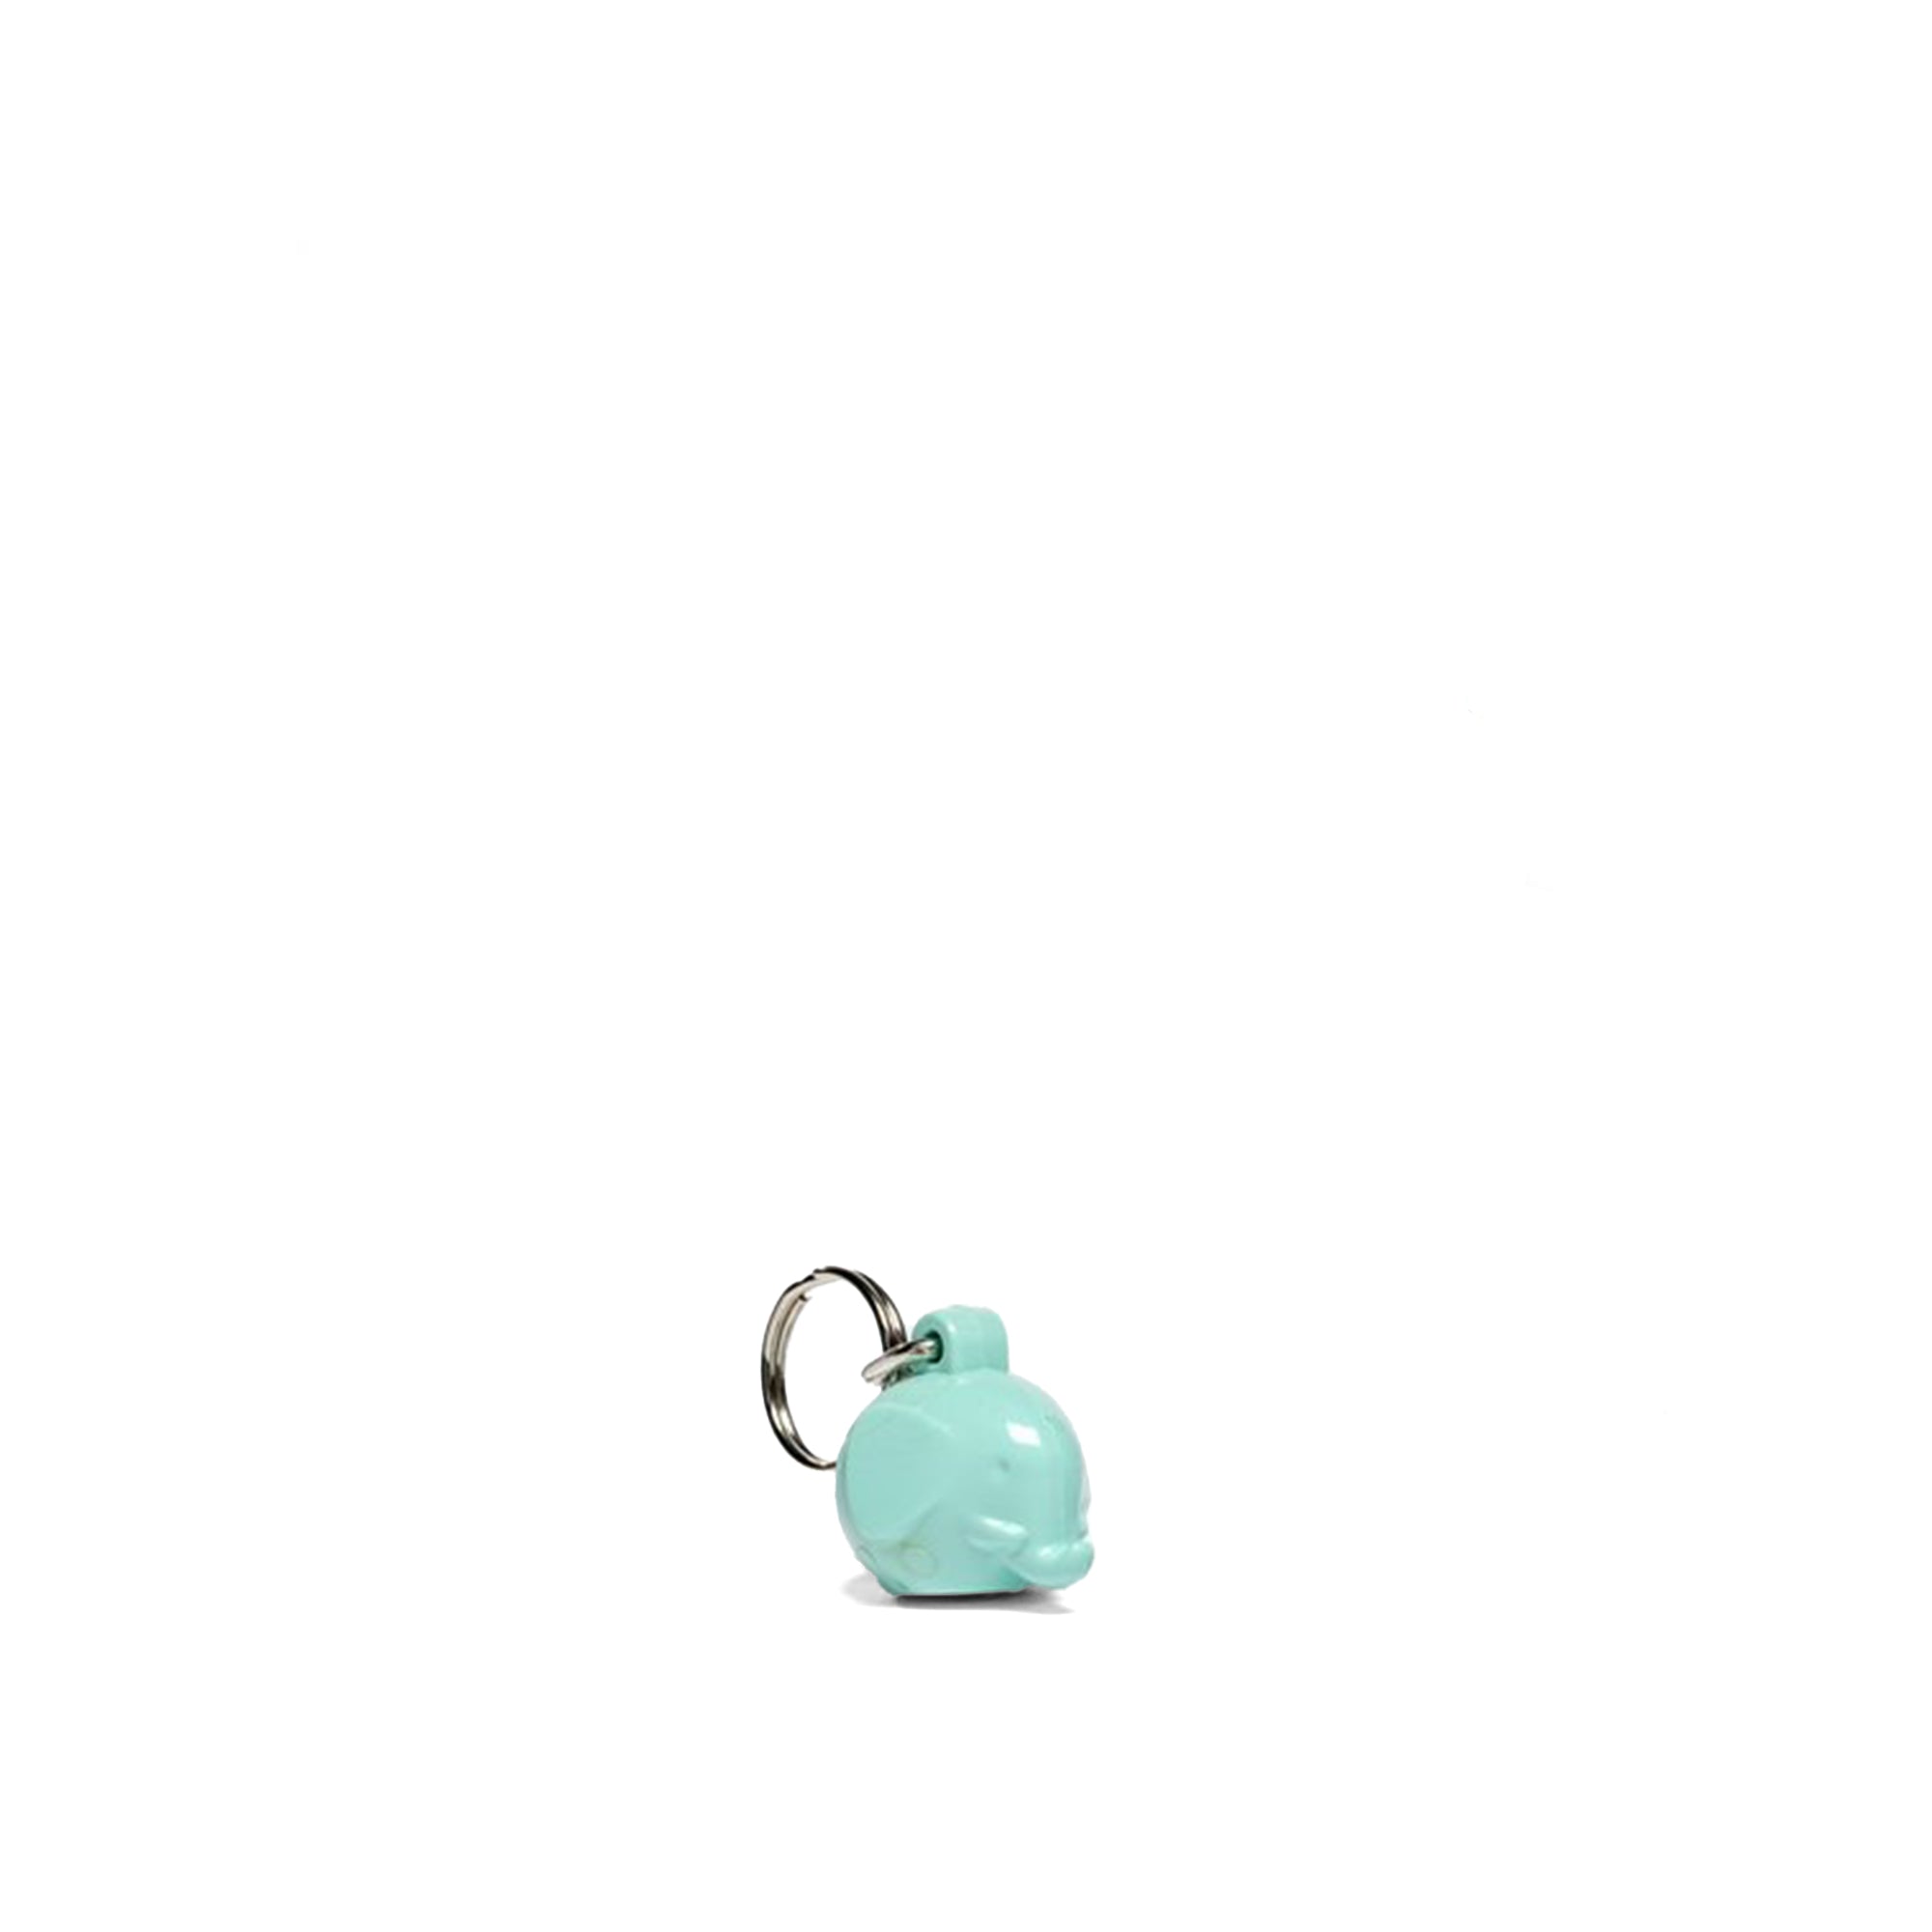 Mini Elephant Keychain